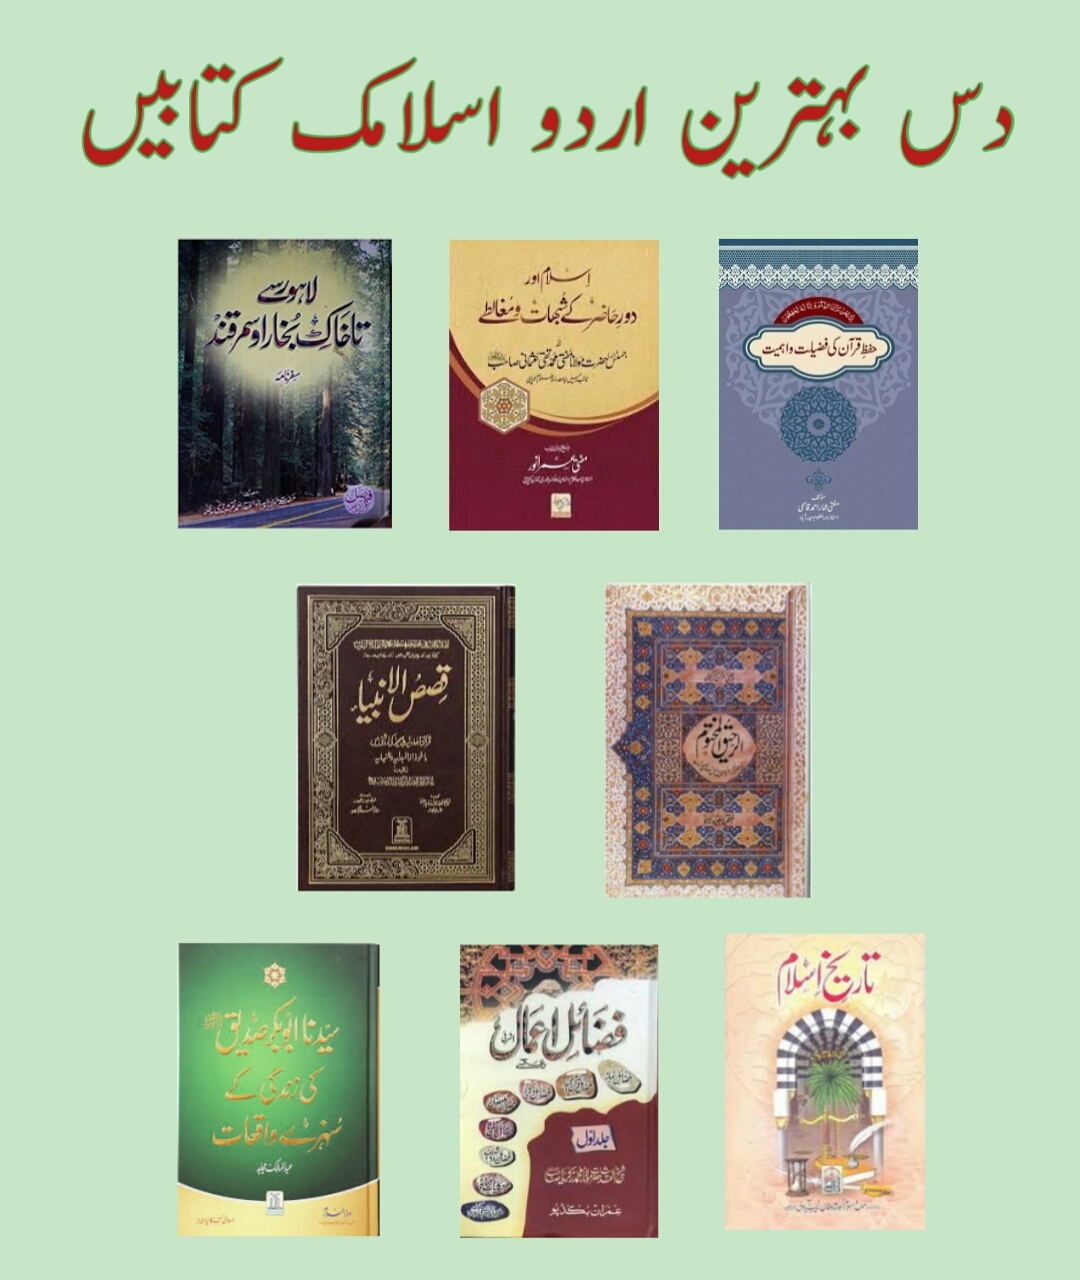 10 Best Islamic Books In Urdu Pdf Free Download Best Urdu Books 